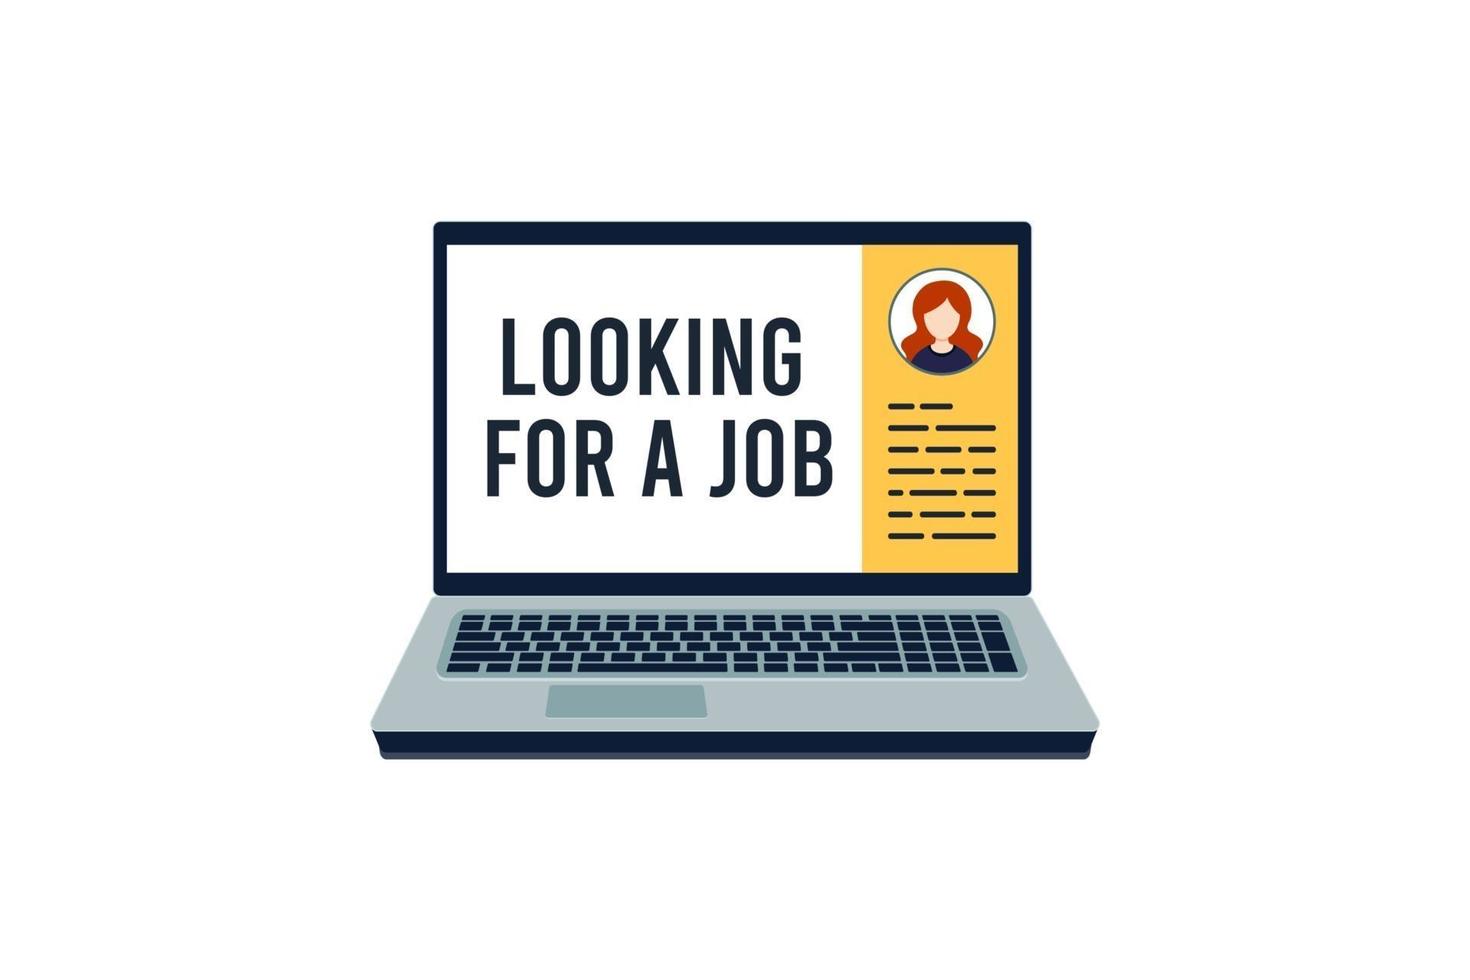 werk zoeken op internet. een baan zoeken. werkgelegenheid website. sollicitatiegesprek. online carrière. technologieconcept. vector illustratie plat ontwerp, op witte achtergrond.